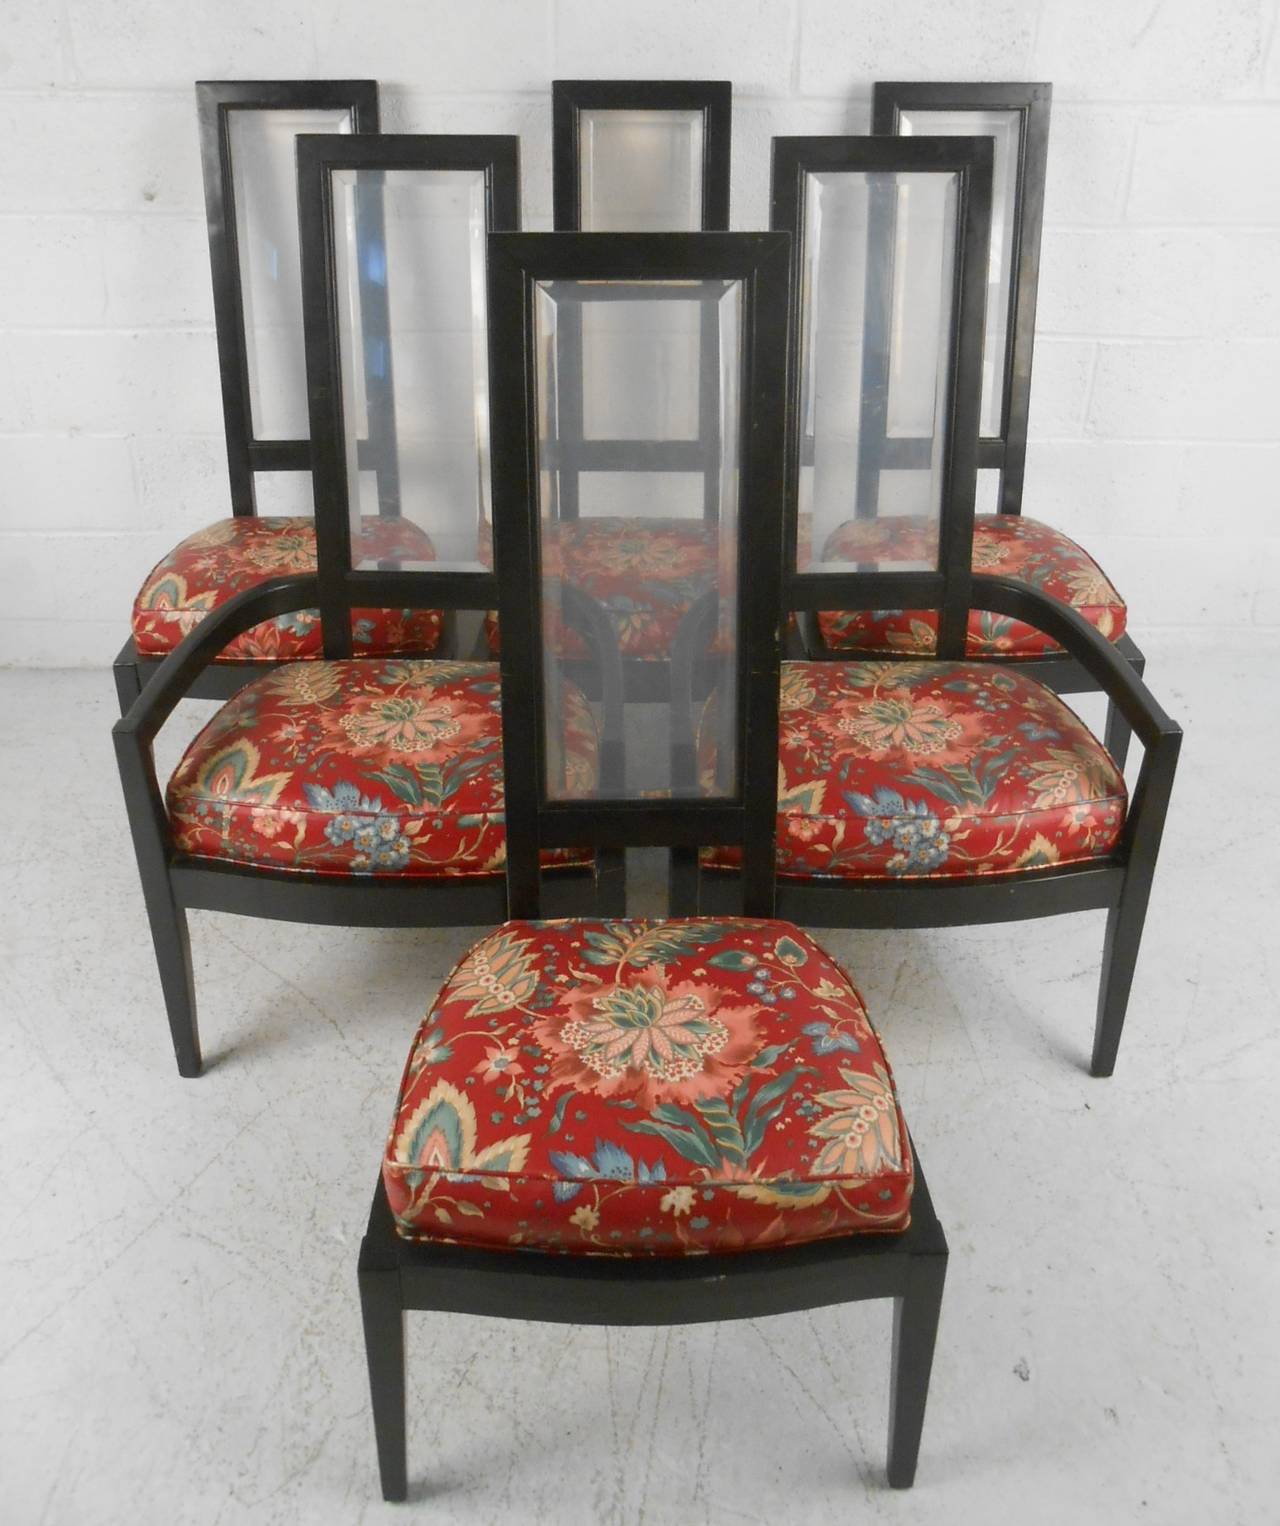 Einzigartiger Satz von Esszimmerstühlen mit hoher Rückenlehne von der Brickfield Furniture Company, High Point N.C., 1972. Schwarz lackierte Holzrahmen mit abgeschrägten Lucite-Rückseiten und zeitgemäßen Polstermöbeln. Bitte bestätigen Sie den